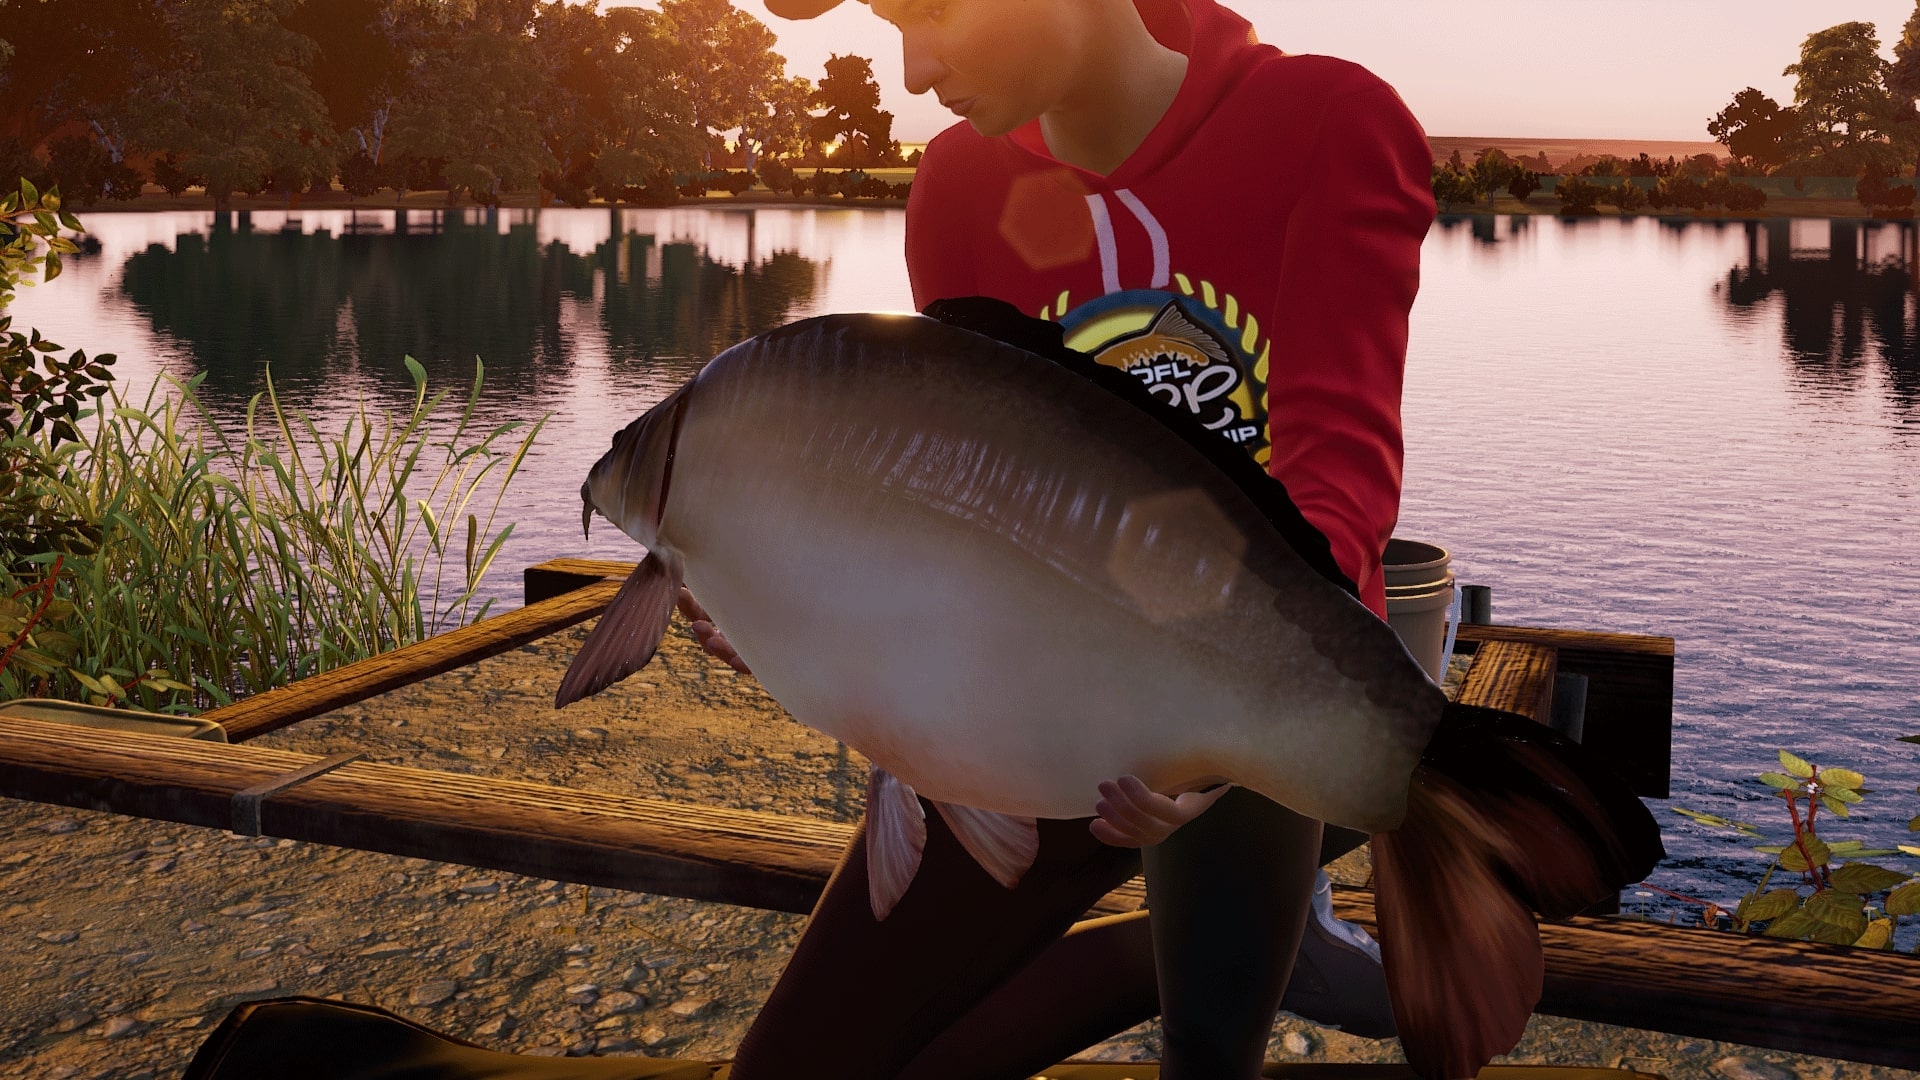 Fishing Sim World: Pro Tour — Gigantica Road Lake on PS4 — price